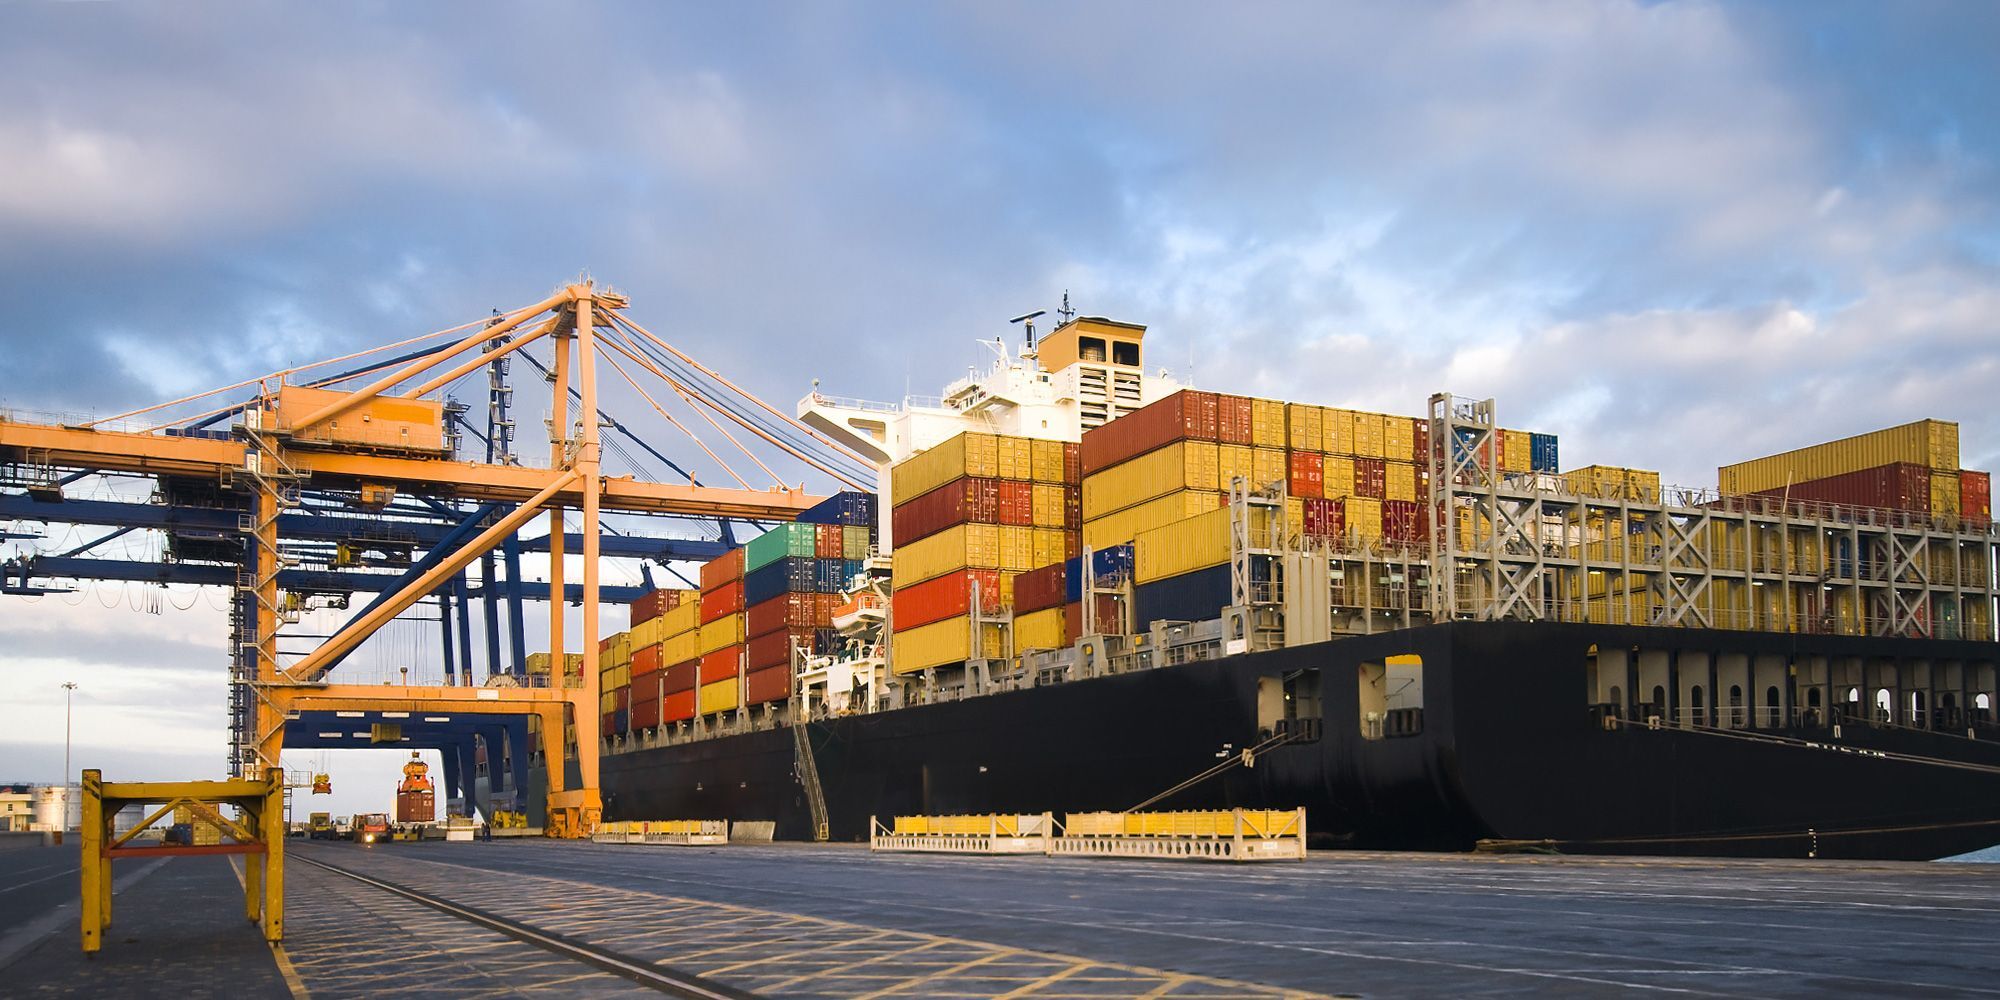 گمرک شهید رجایی با ۳۲ درصد از کل صادرات و واردات در رتبه نخست گمرکات قرار گرفت